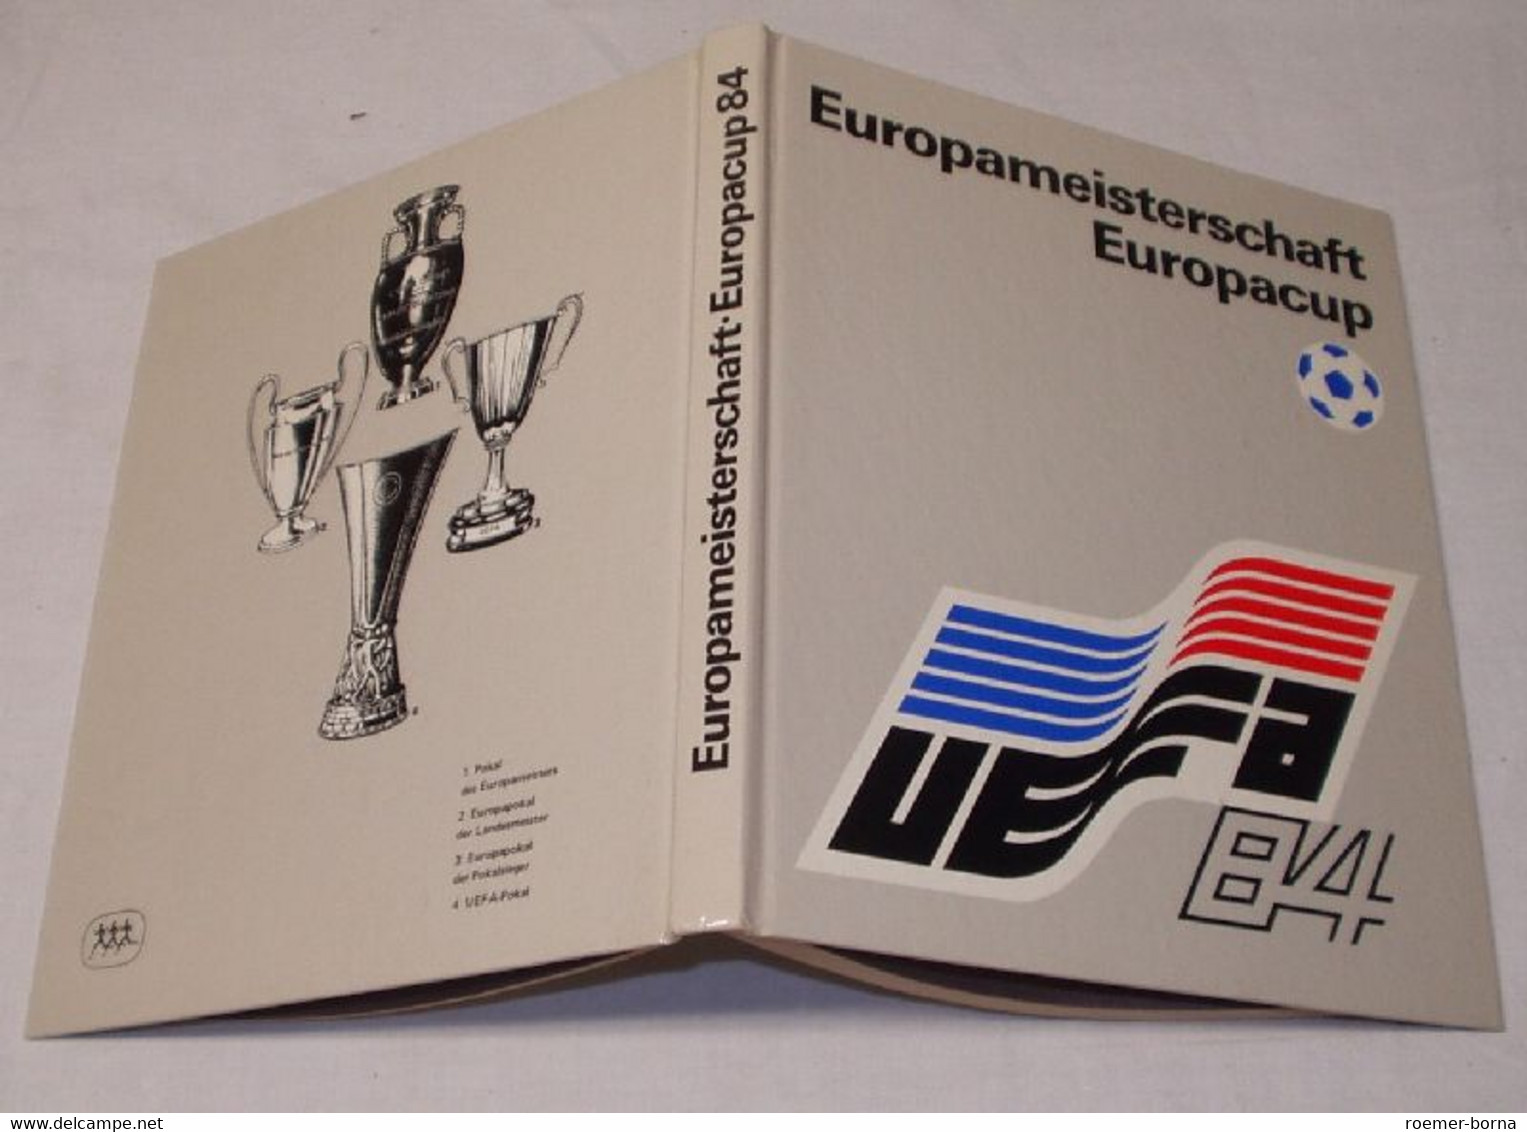 Europameisterschaft Europacup 1984 - Sport